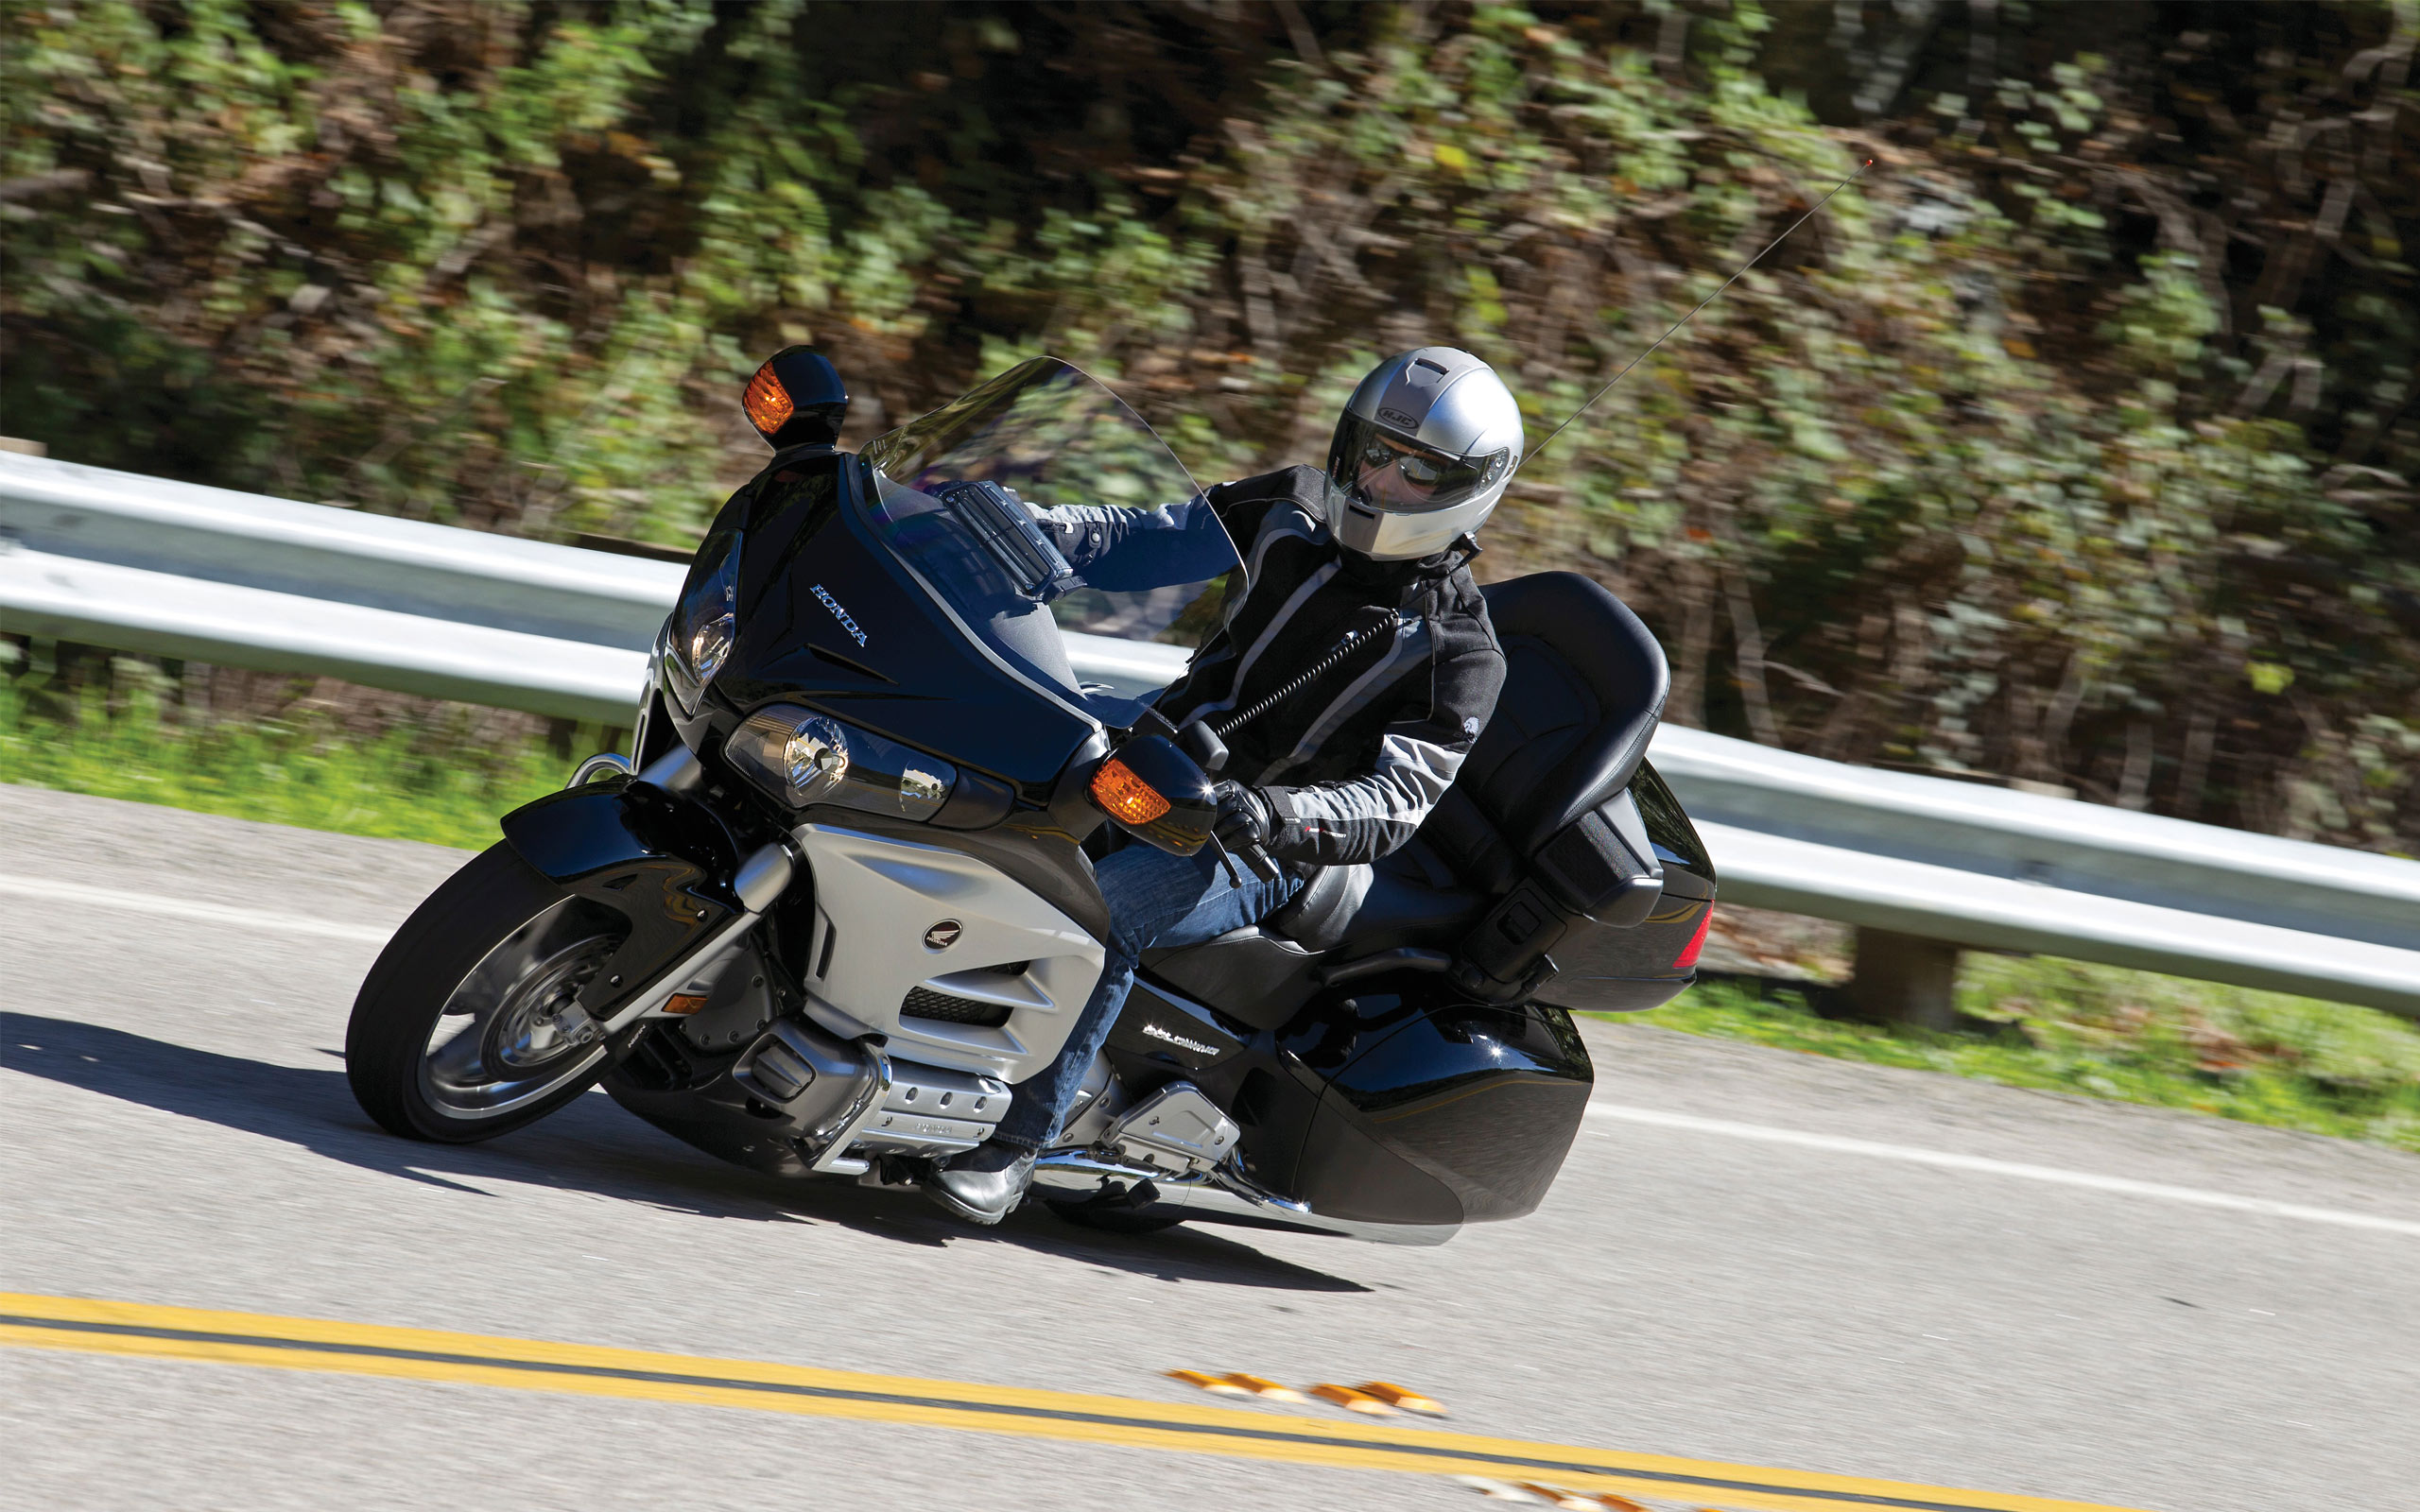 pc wallpaper Honda Goldwing touring motorcycle 2560x1600